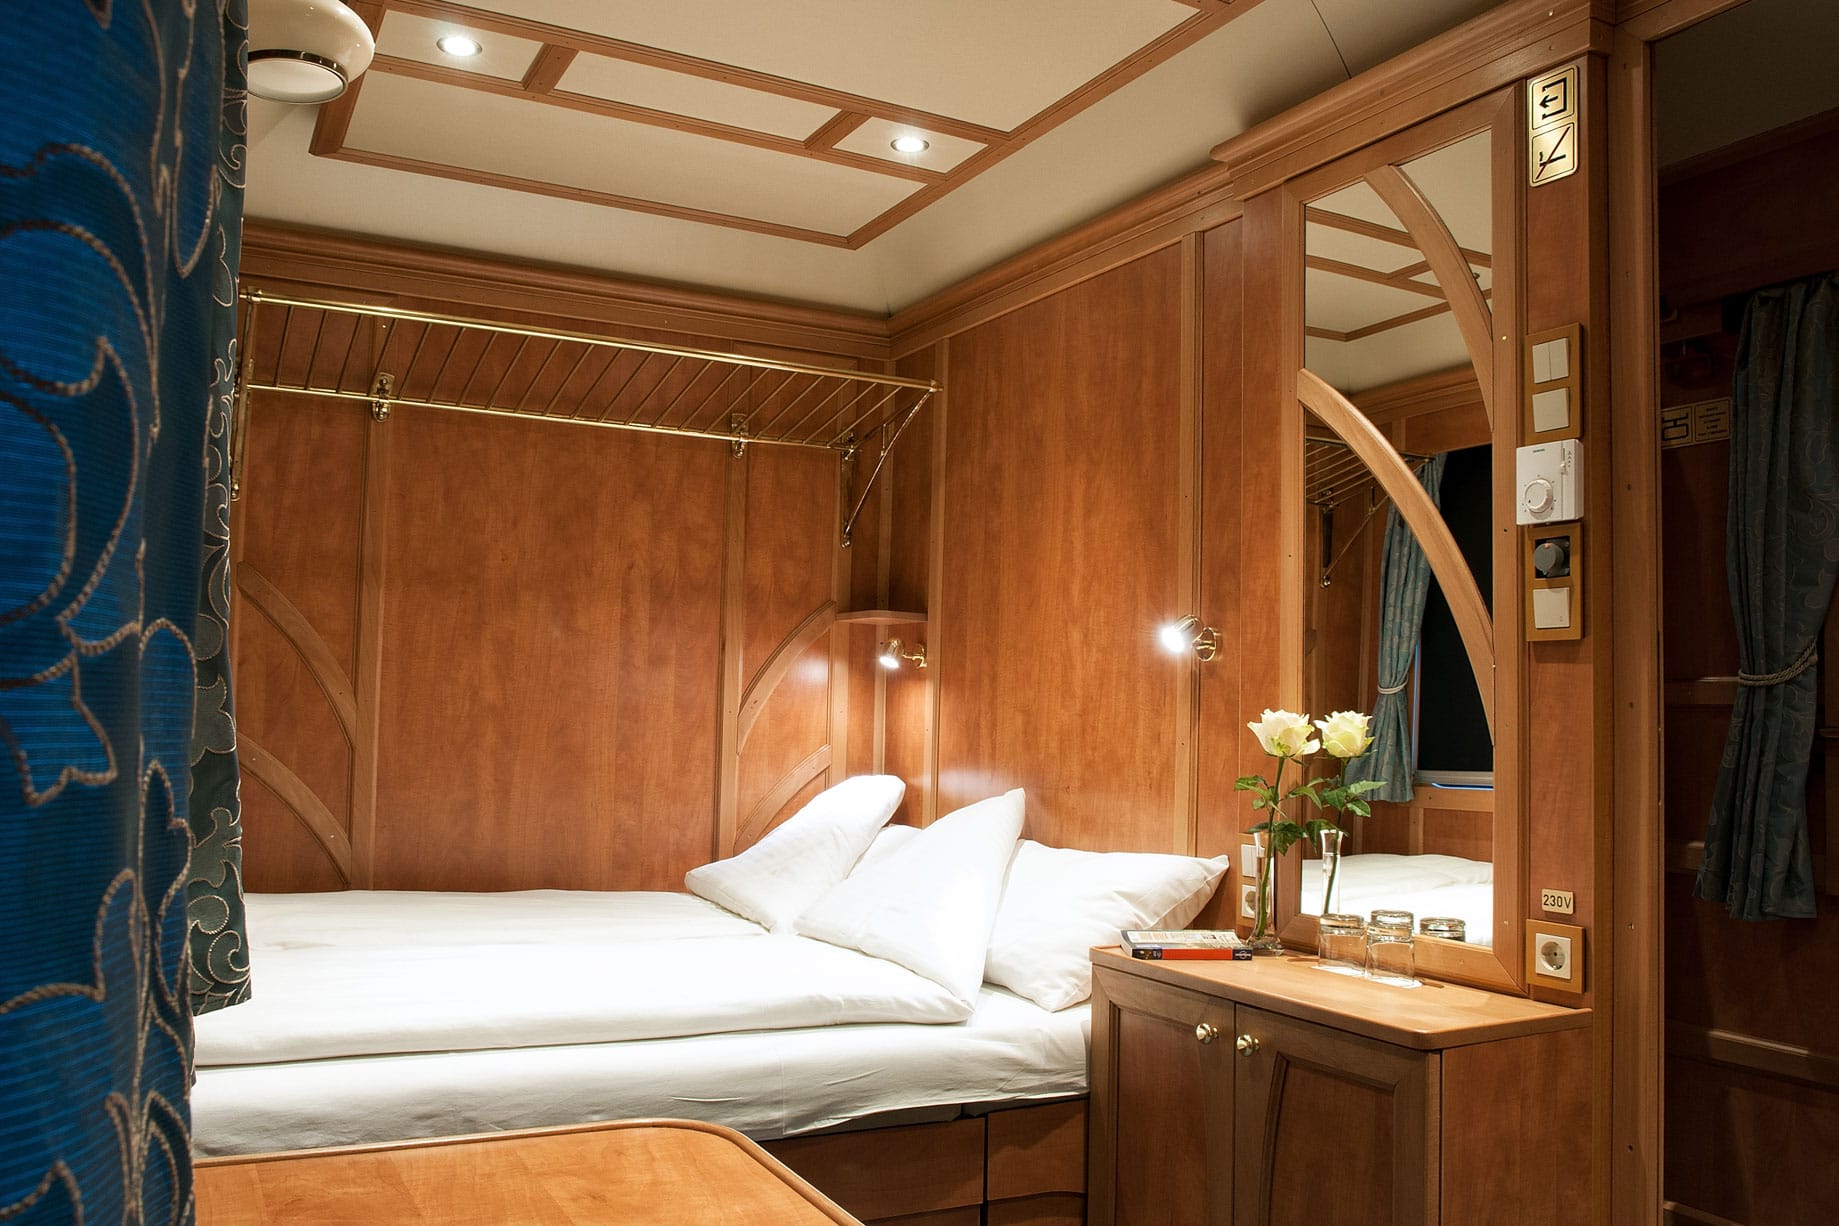 Golden Eagle Danube Express bedroom interior